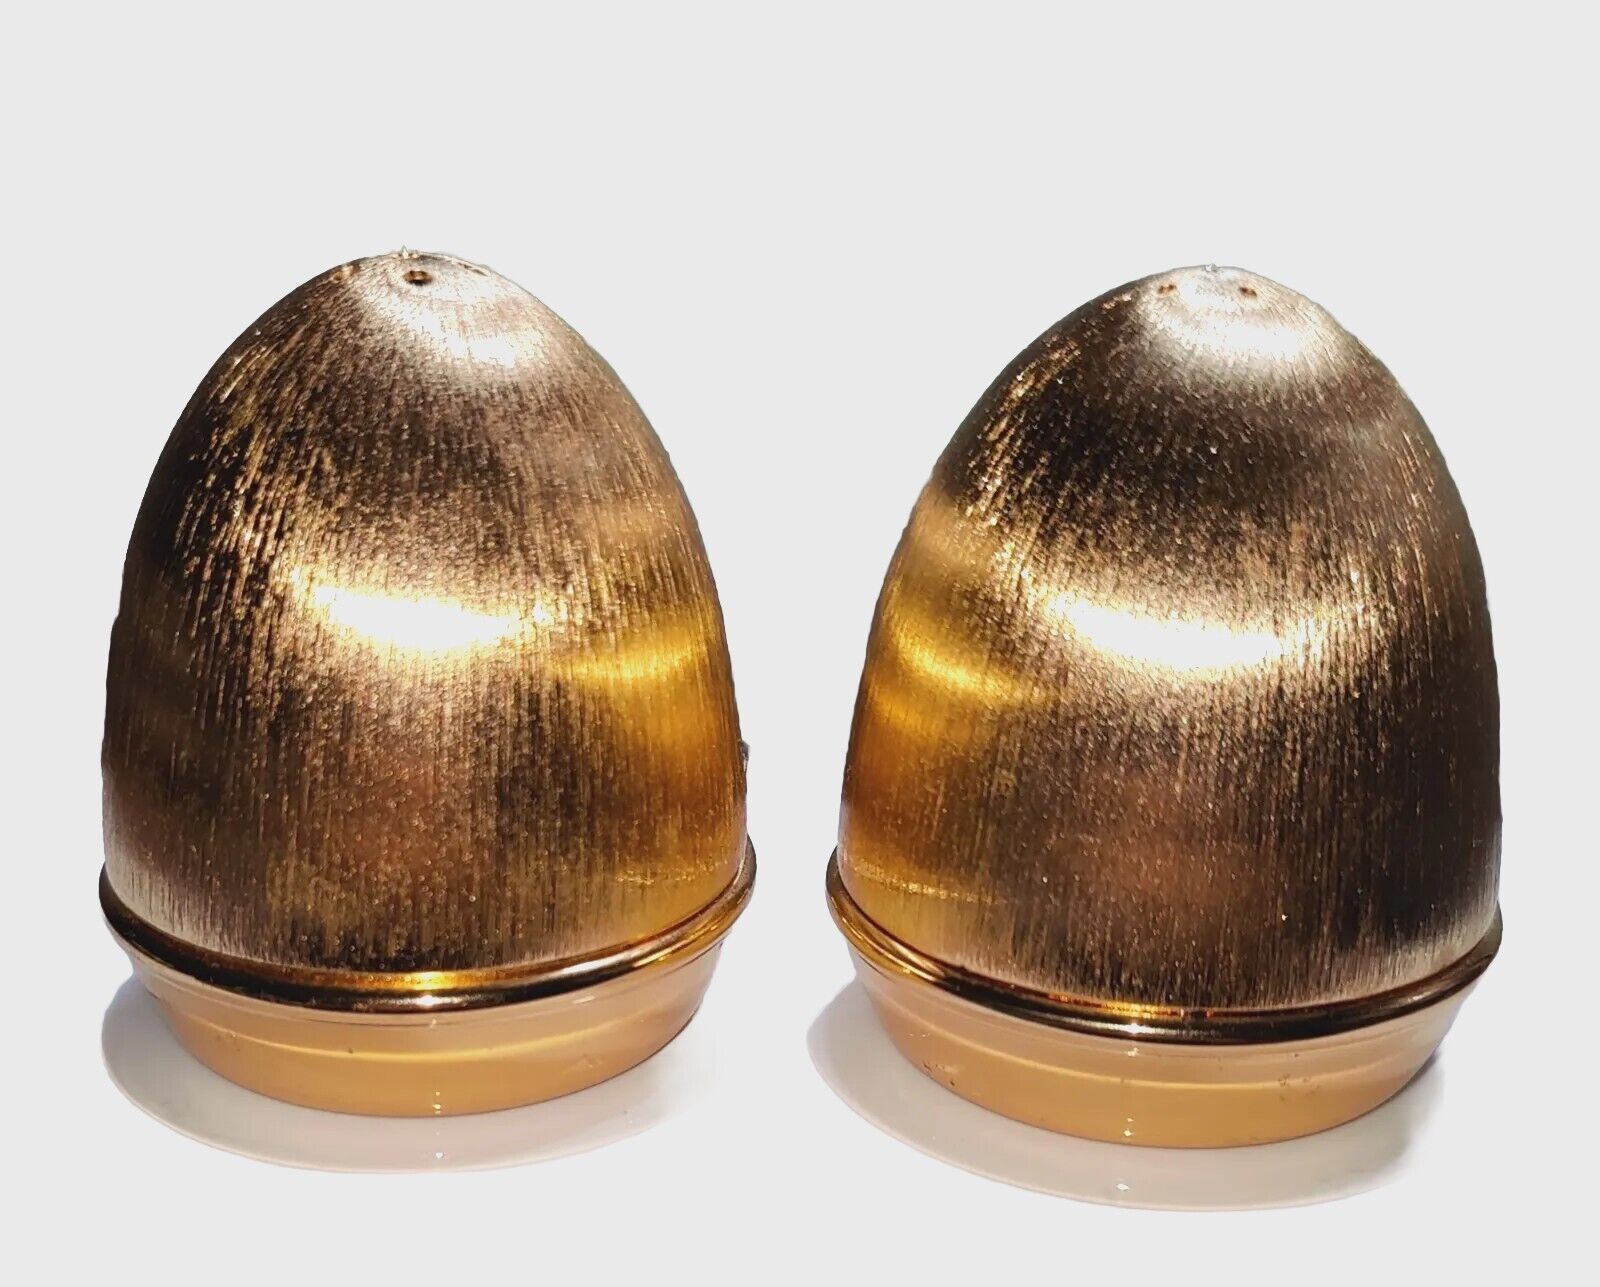 VTG Napier Salt Pepper Shakers Gold Tone Egg Shaped Dining MCM Easter 